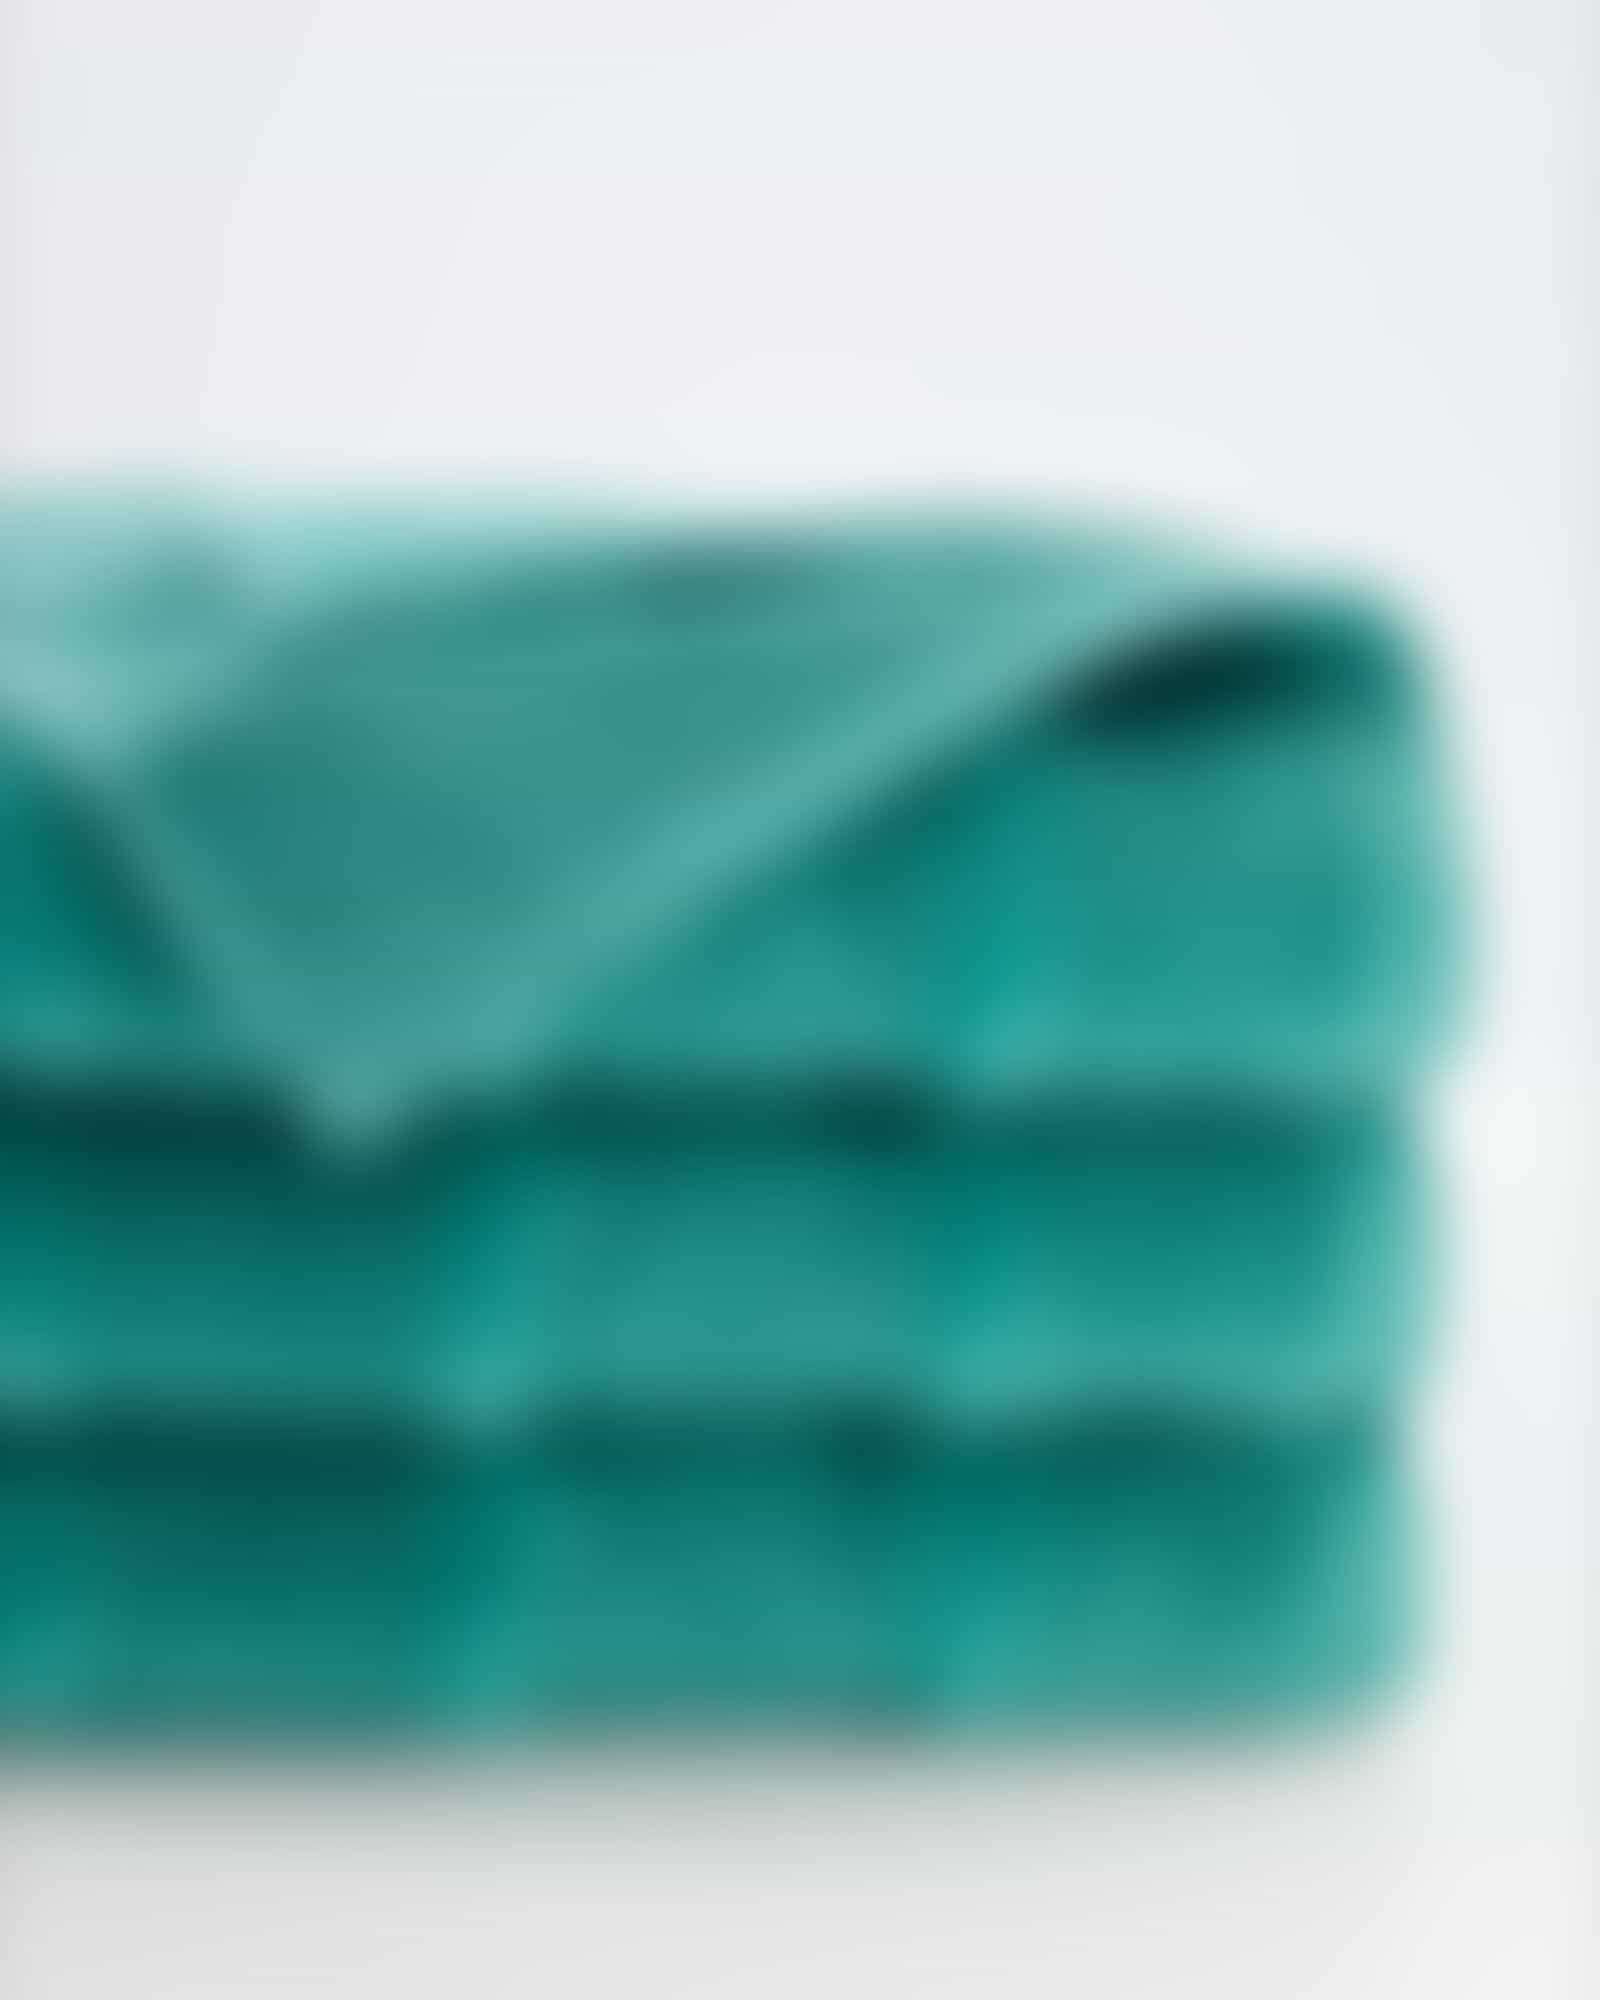 Cawö Handtücher Noblesse Uni 1001 - Farbe: smaragd - 421 - Duschtuch 80x160 cm